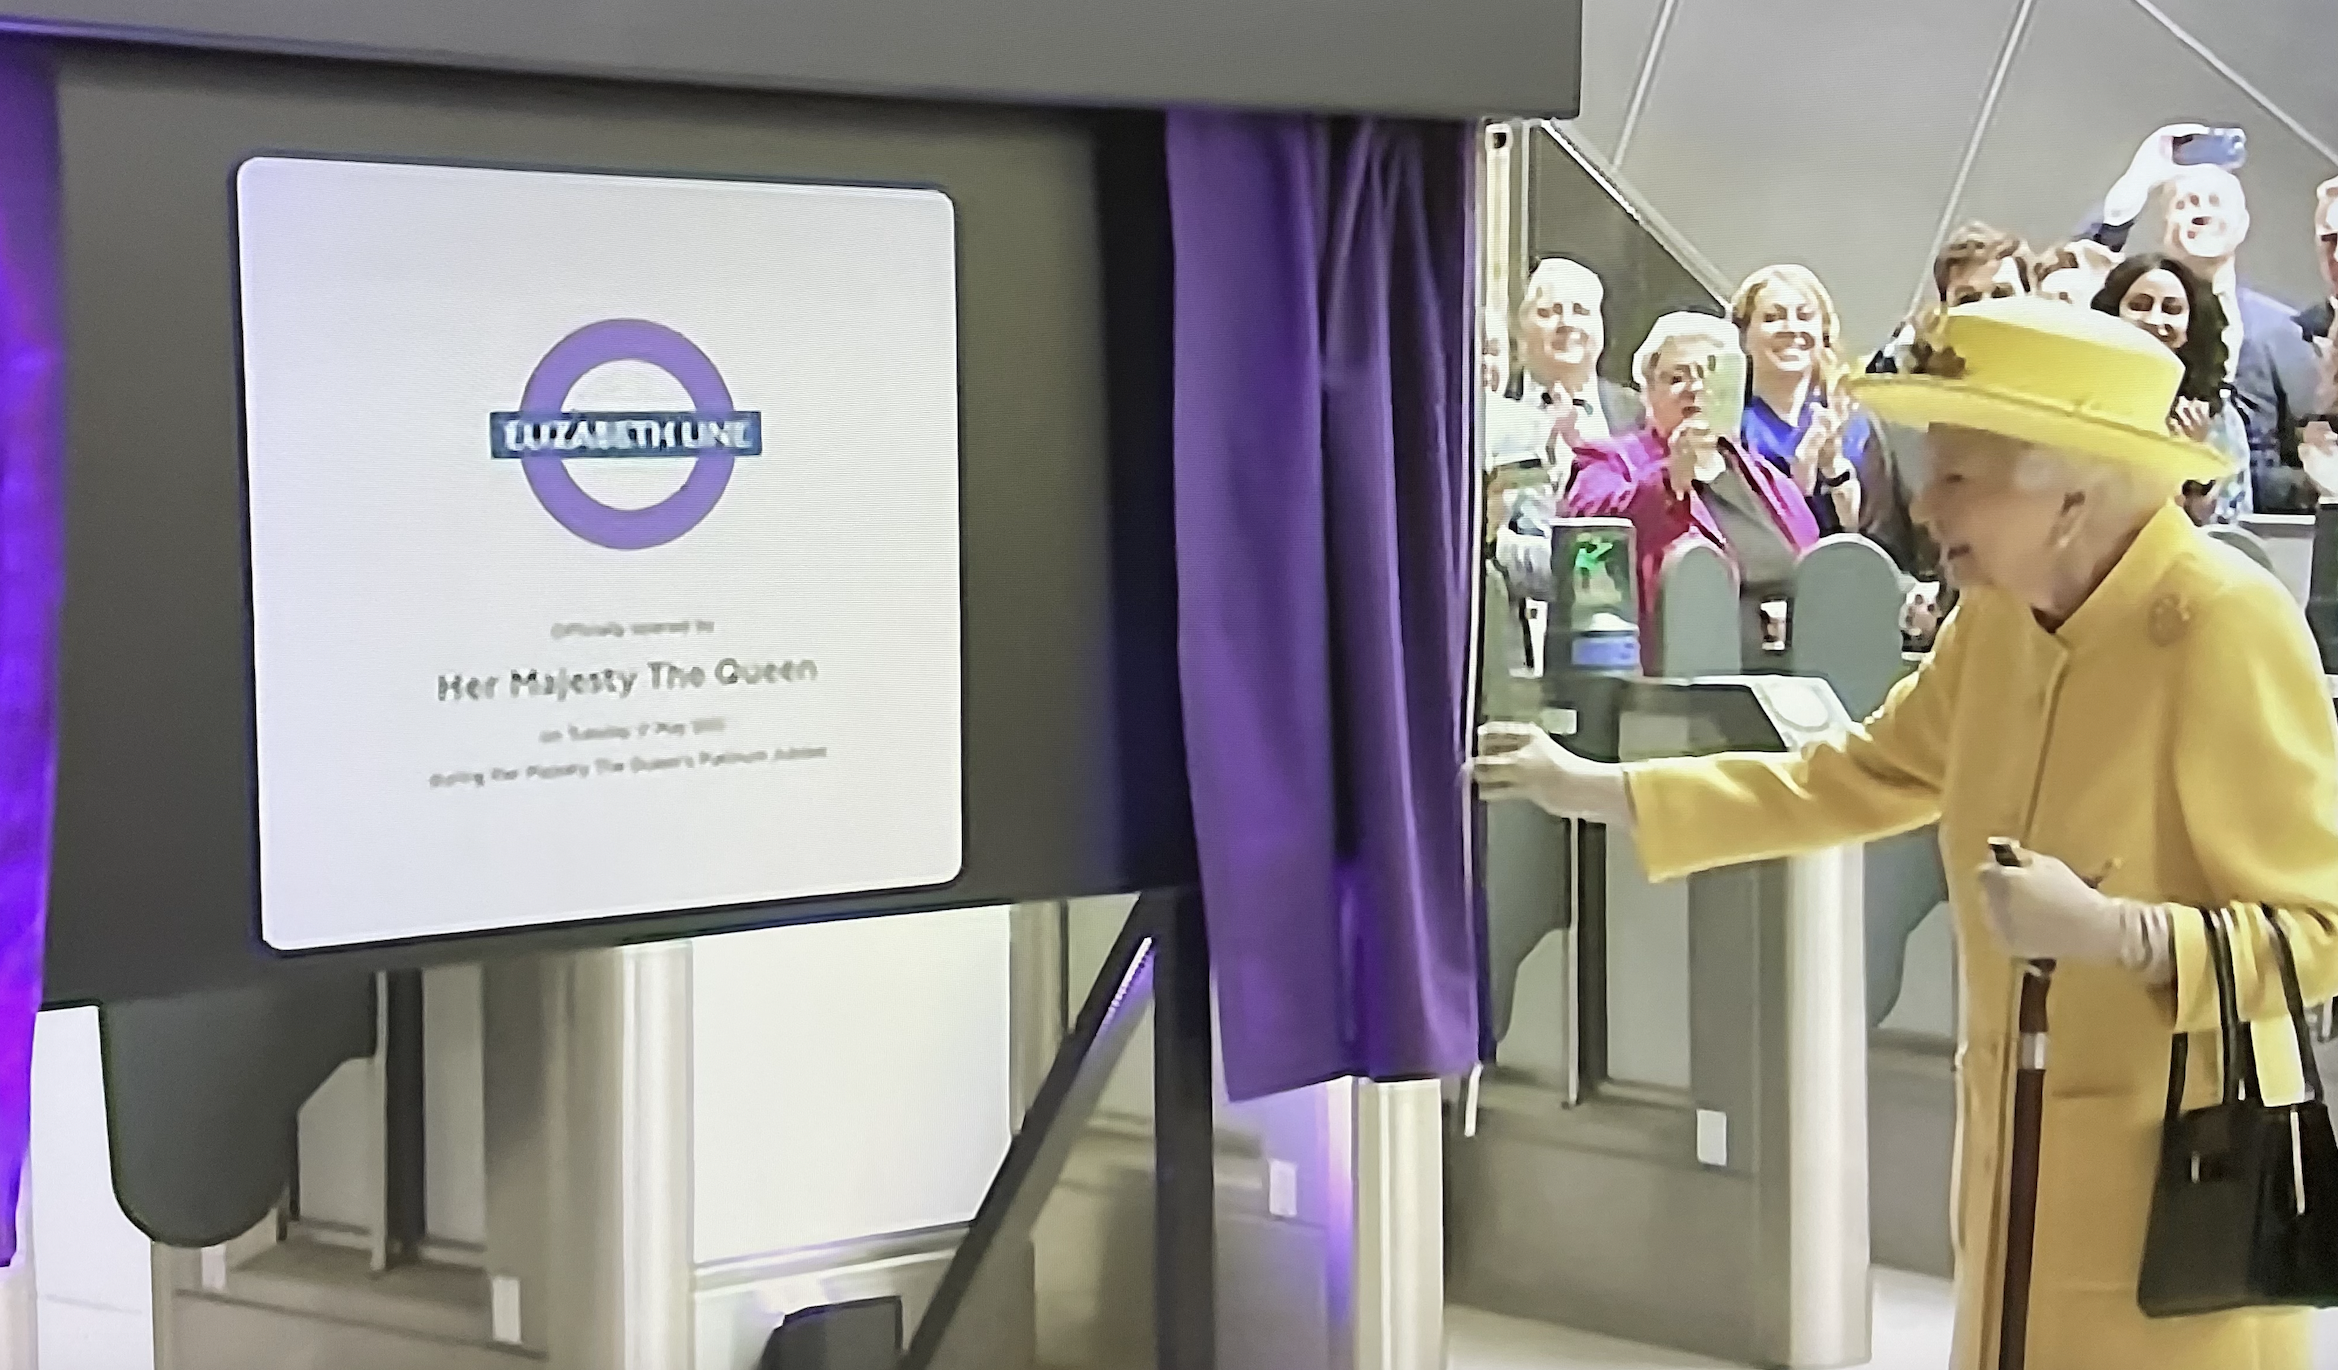 Queen Elizabeth opening Elizabeth line.